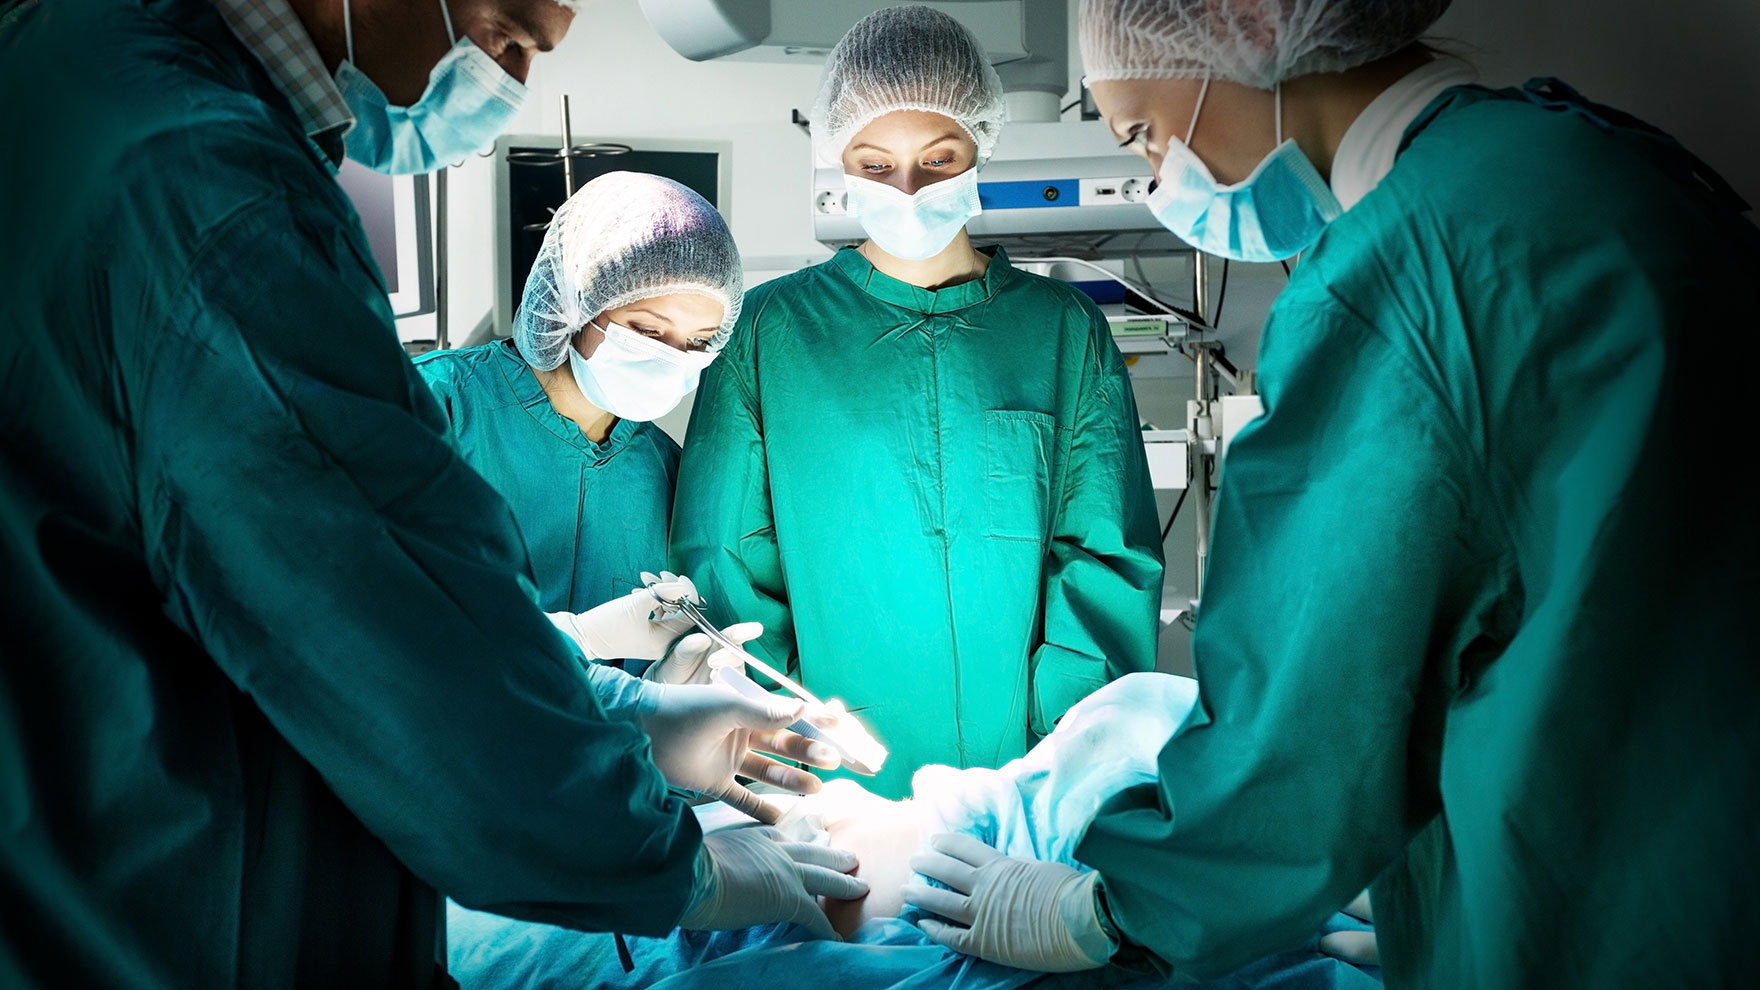 Απογευματινά χειρουργεία: Παρατυπίες στη λίστα αναμονής - Τι καταγγέλλουν οι εργαζόμενοι